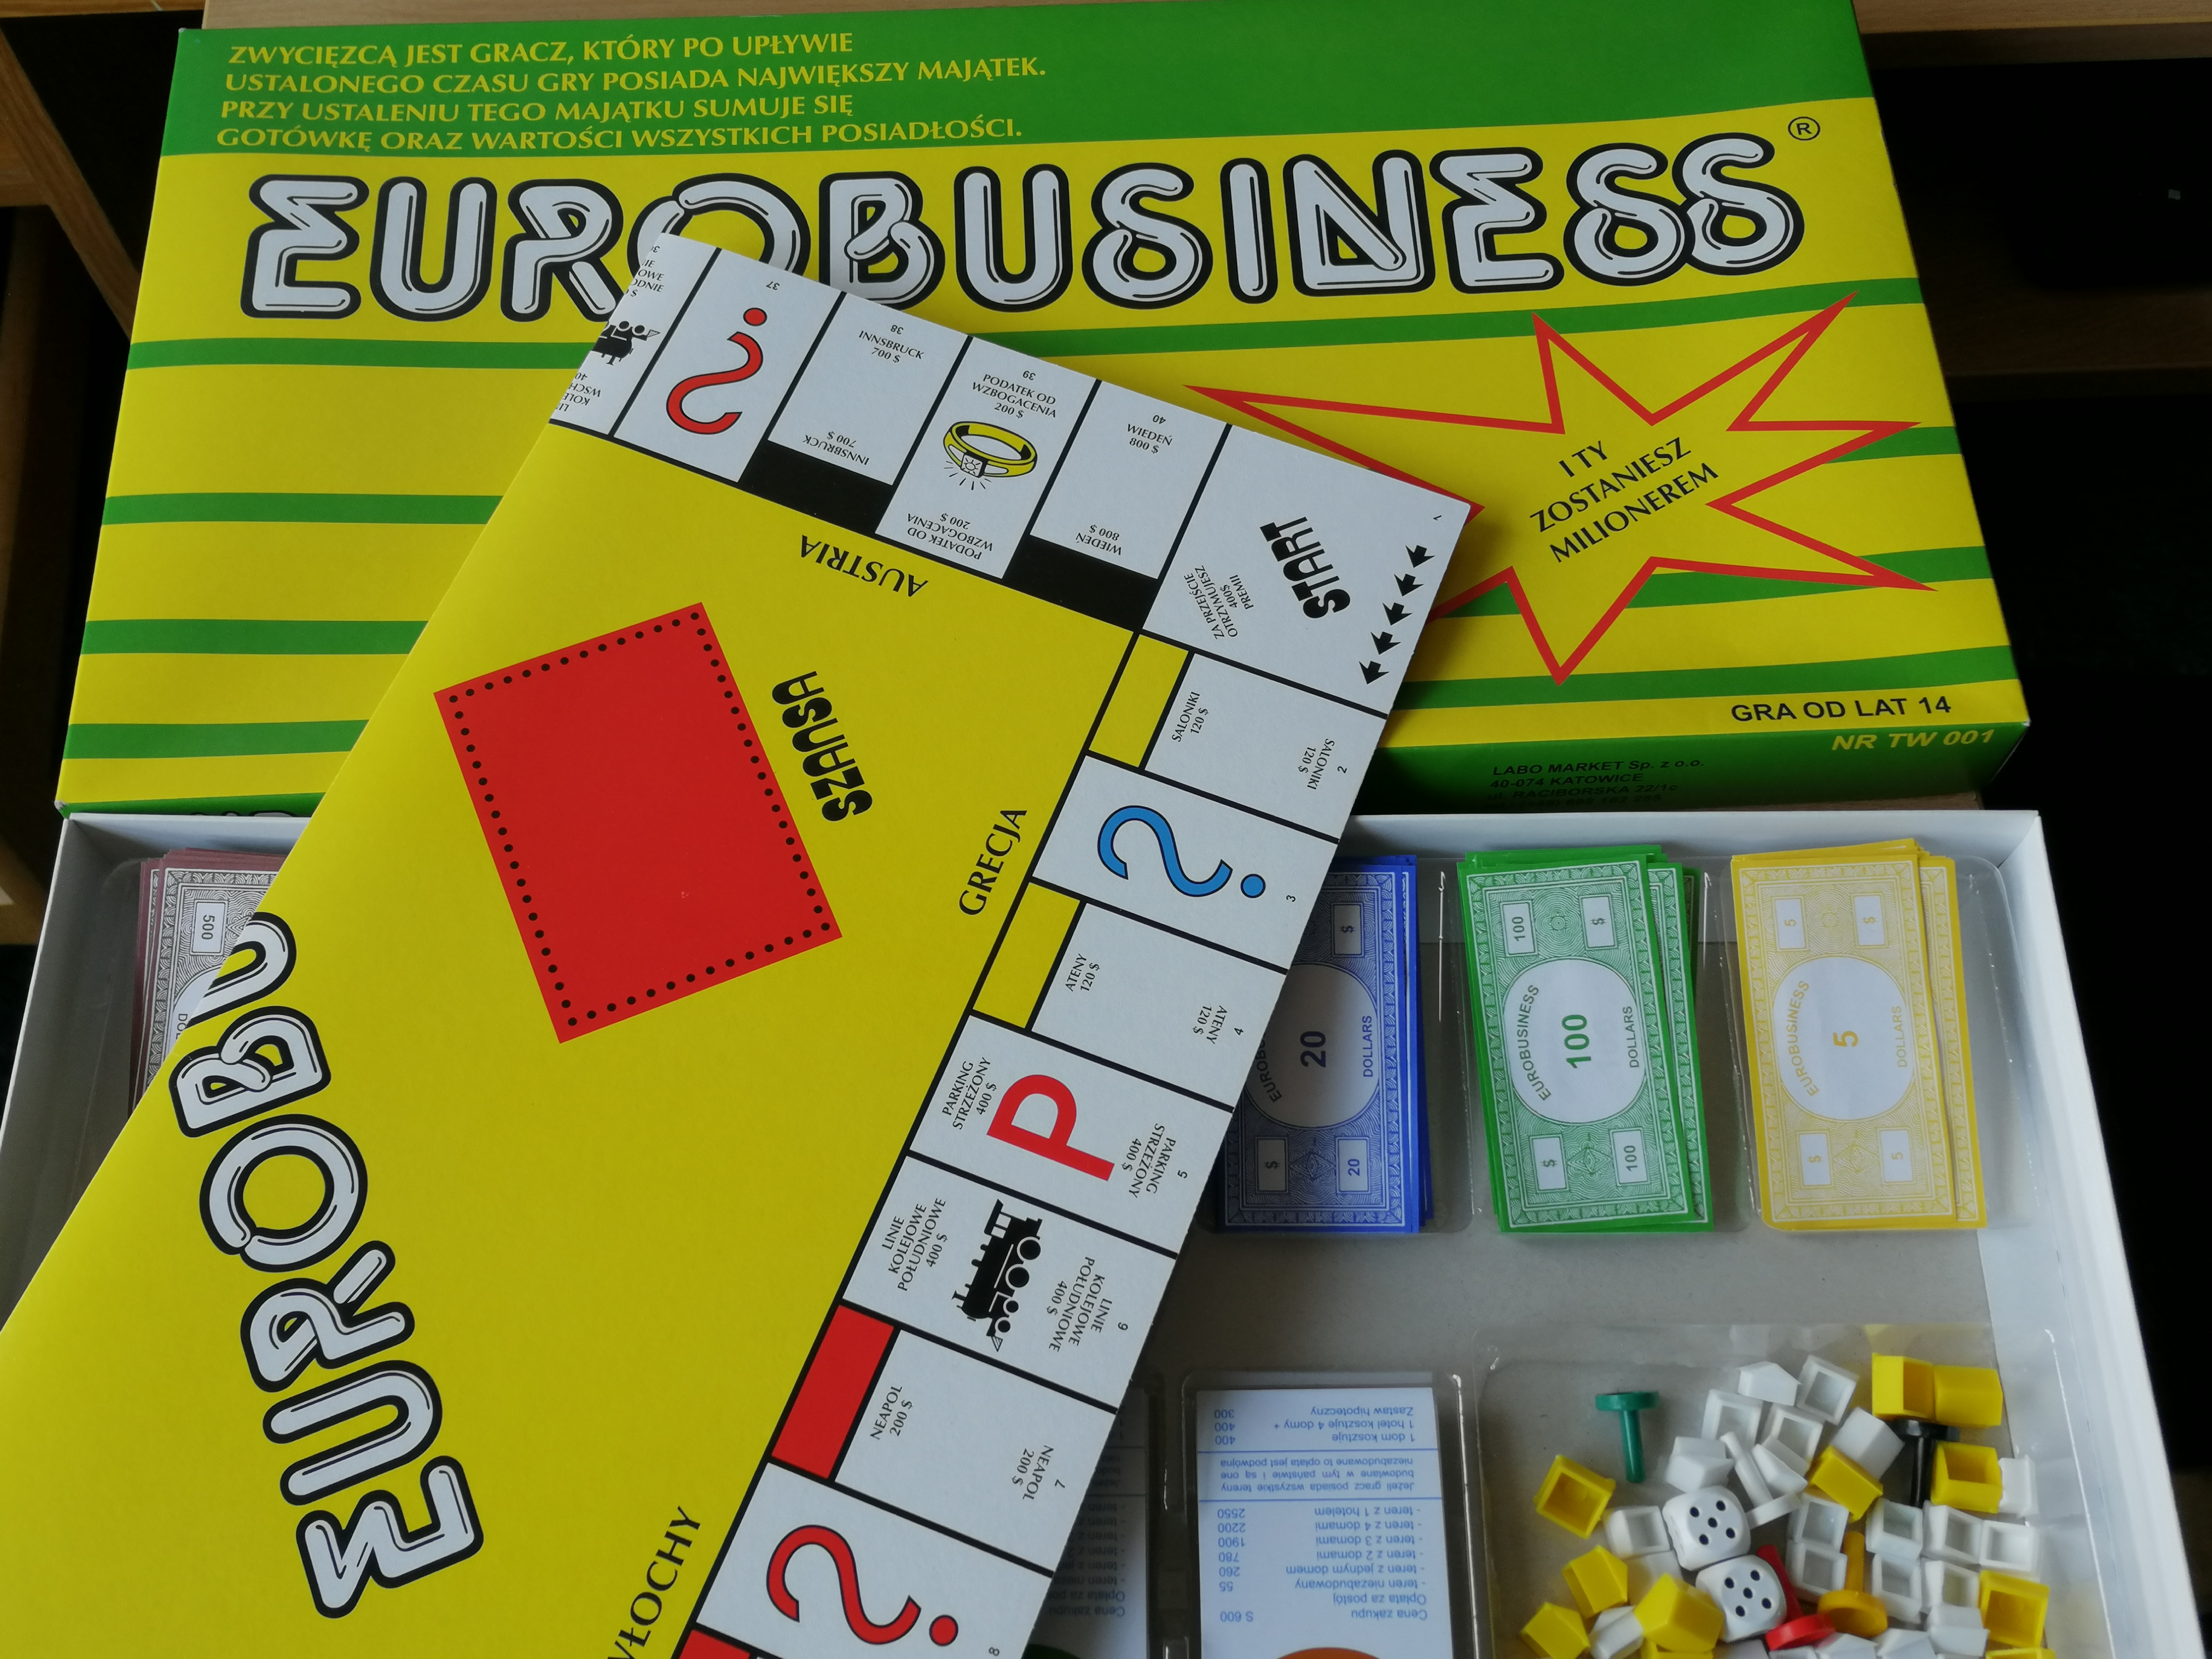 Rozpakowana gra planszowa o nazwie Eurobusiness.